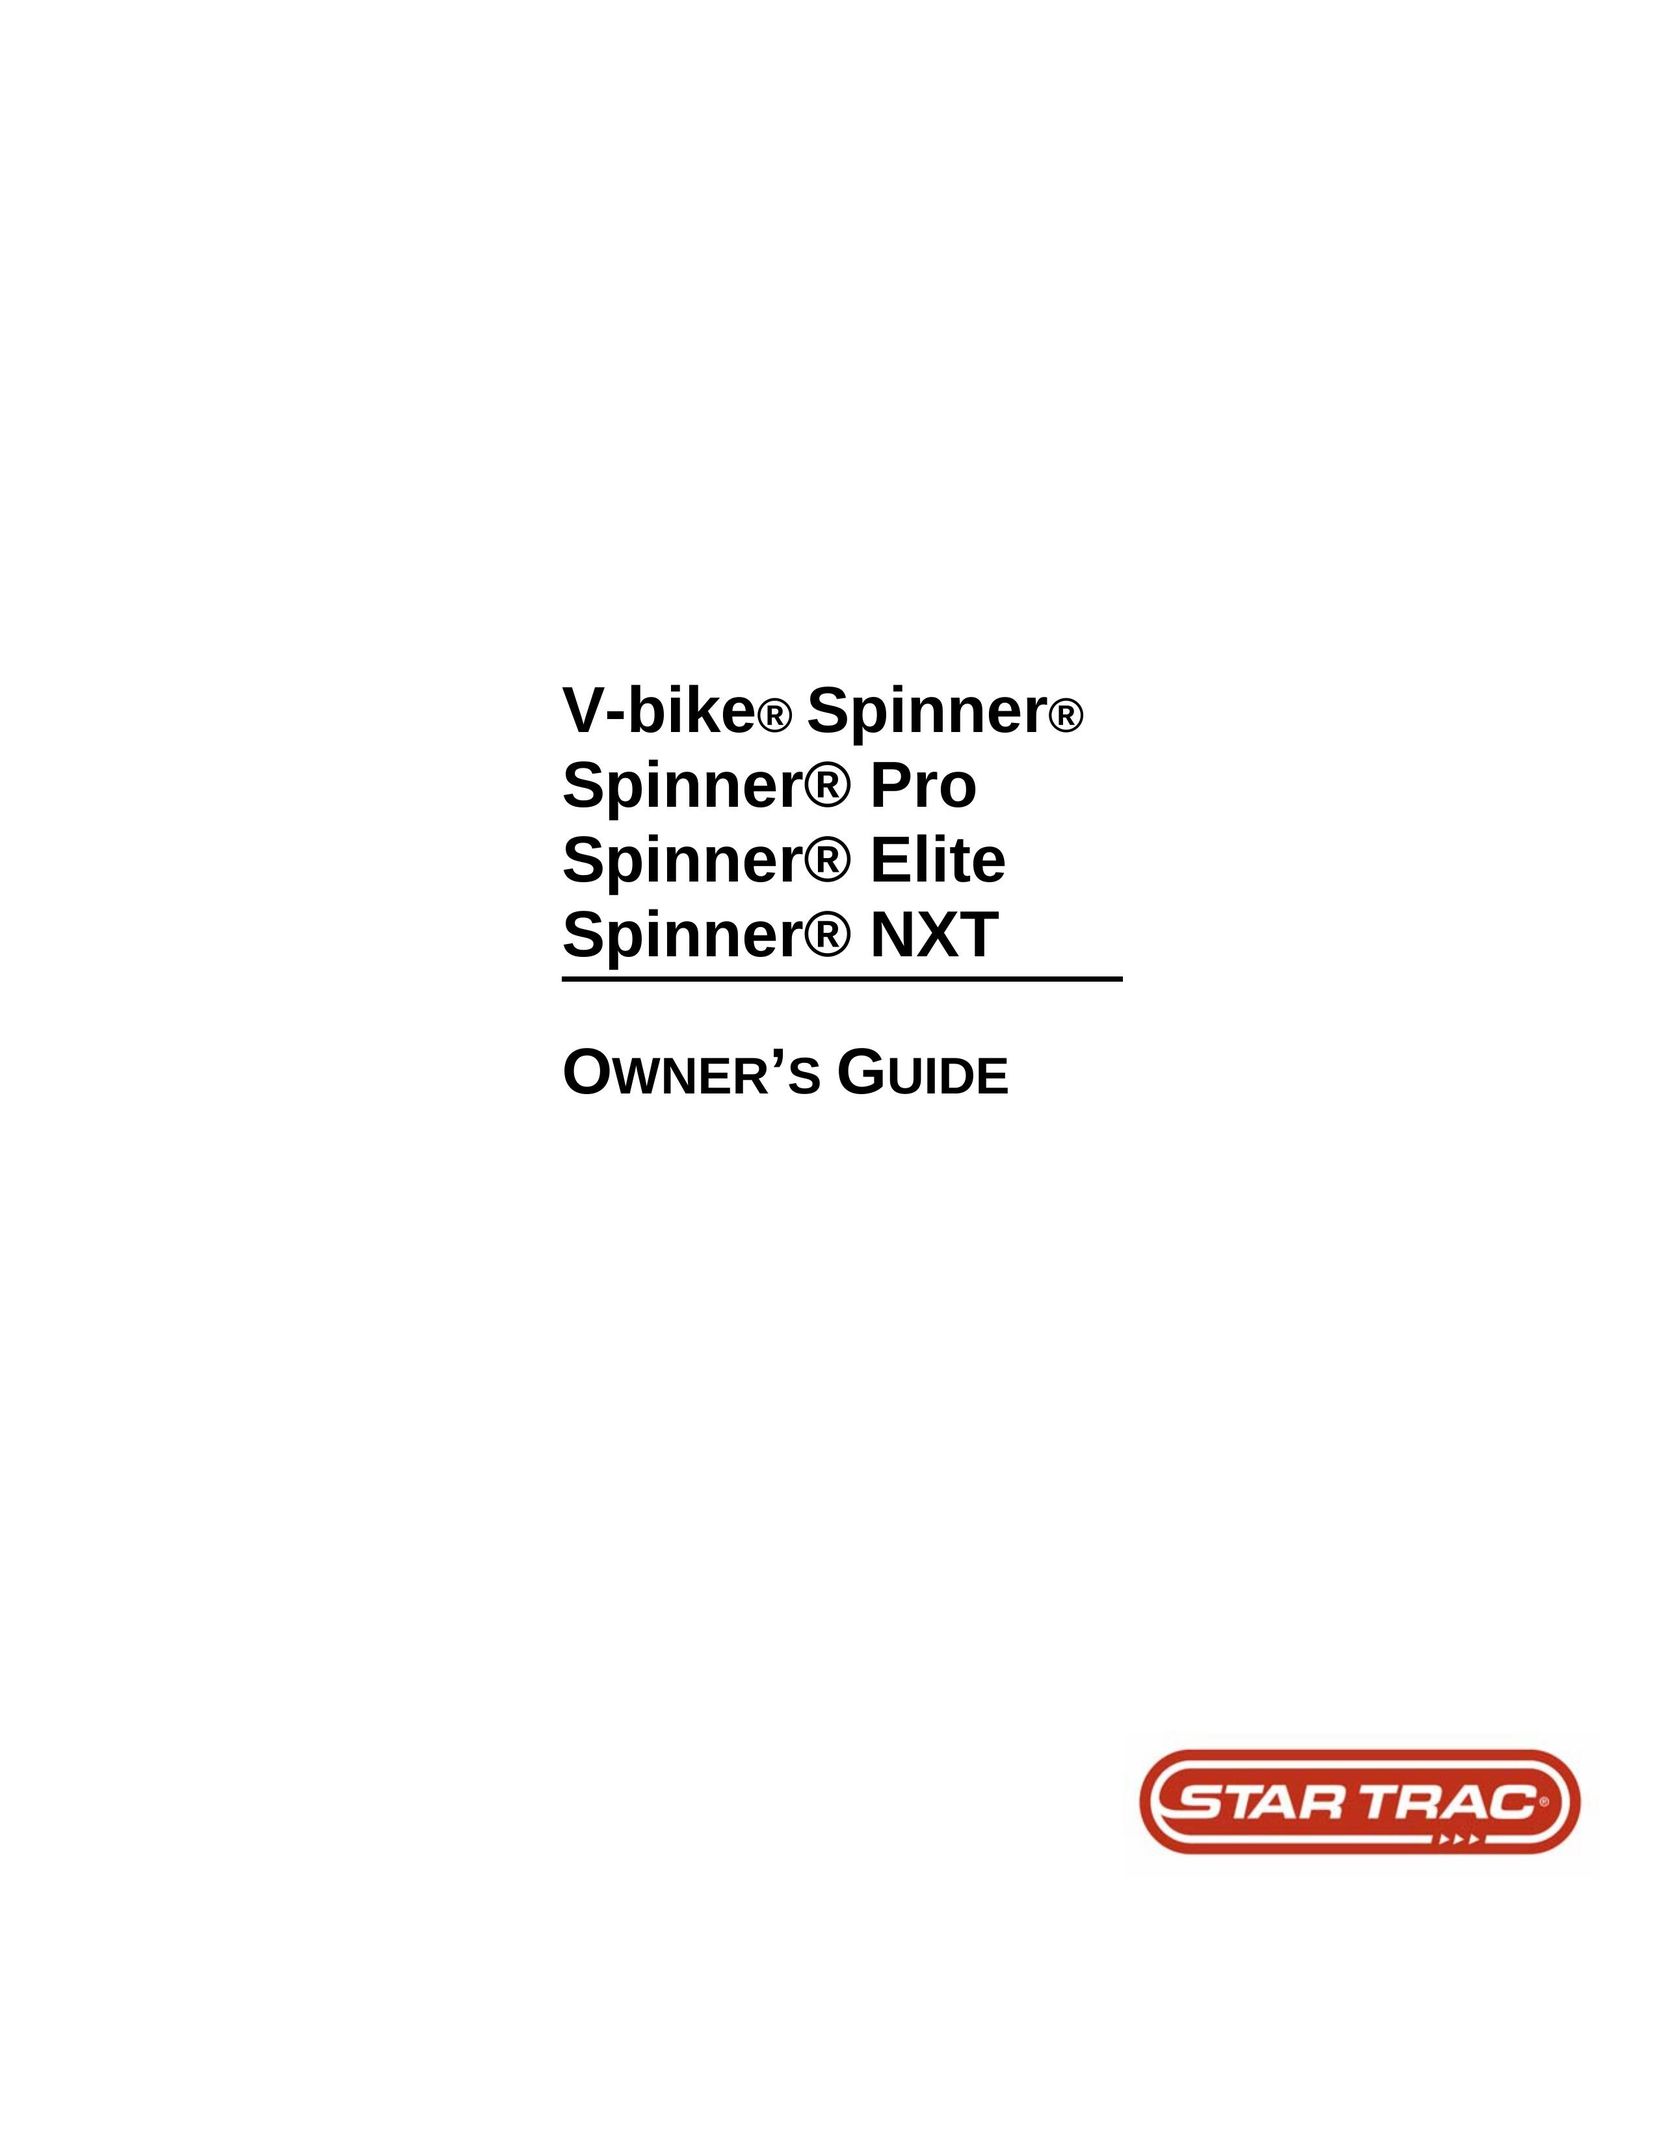 Star Trac V-bike Spinner Spinner Pro Spinner Elite Spinner NXT Bicycle User Manual